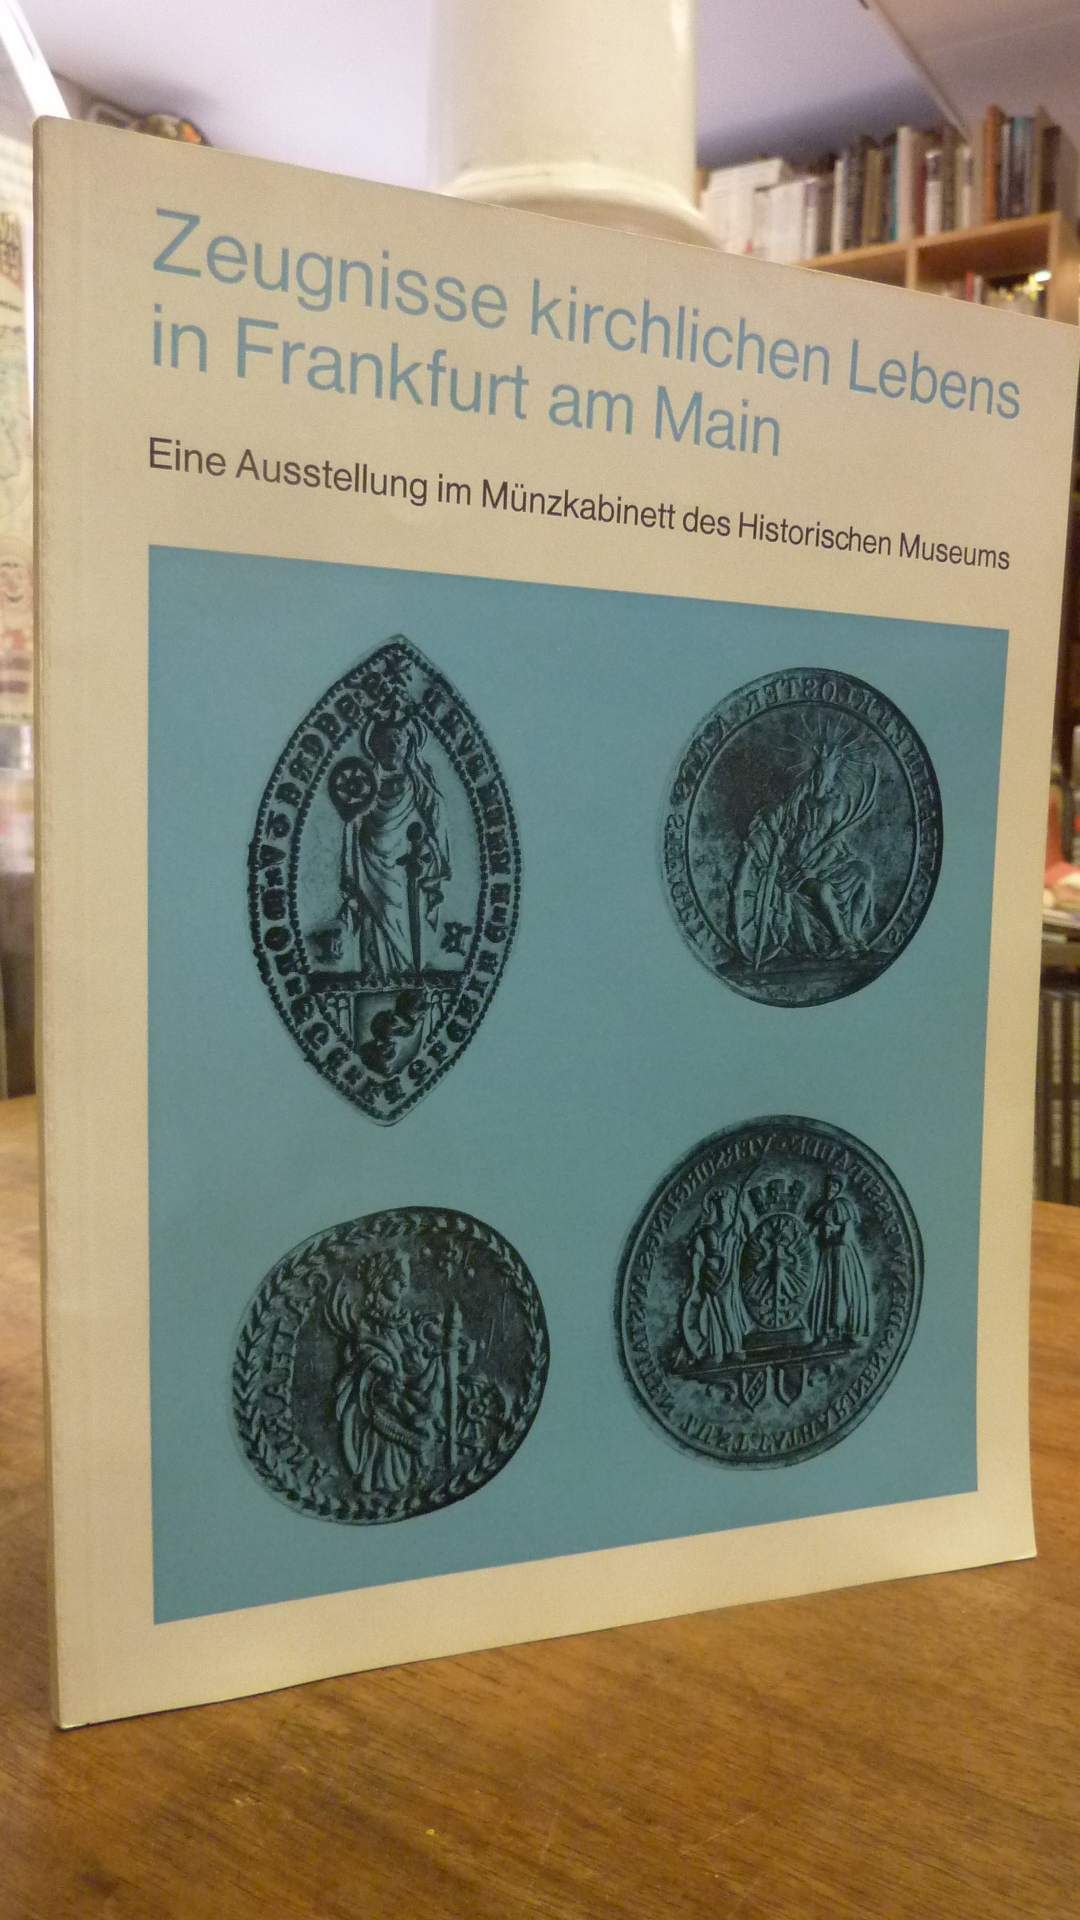 Historisches Museum Frankfurt. Münzsammlung, Zeugnisse kirchlichen Lebens in Fra